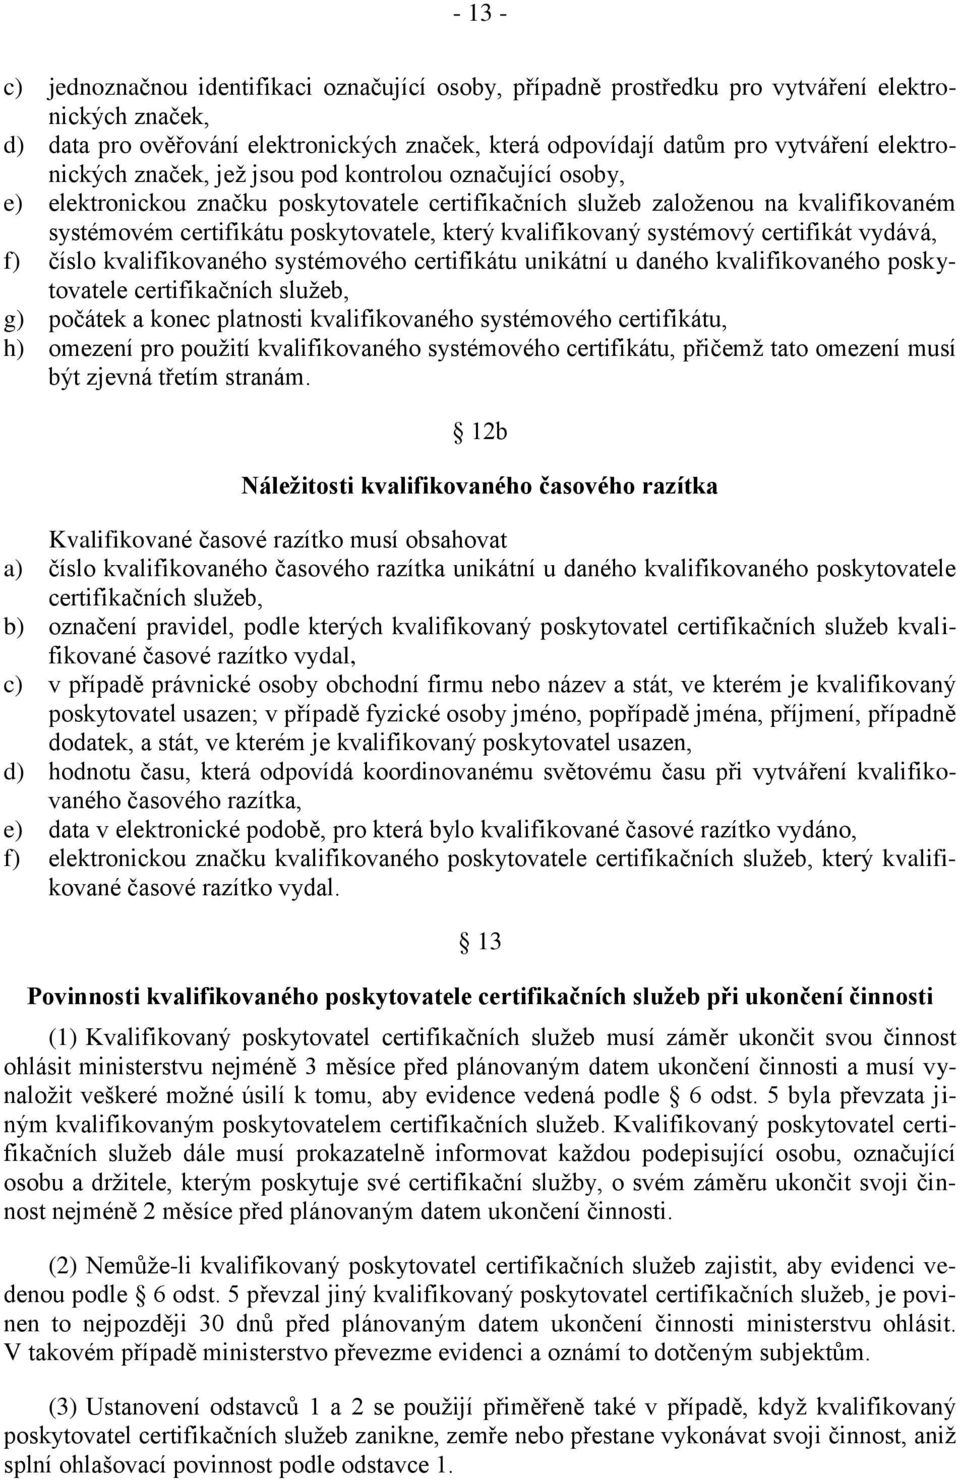 kvalifikovaný systémový certifikát vydává, f) číslo kvalifikovaného systémového certifikátu unikátní u daného kvalifikovaného poskytovatele certifikačních služeb, g) počátek a konec platnosti